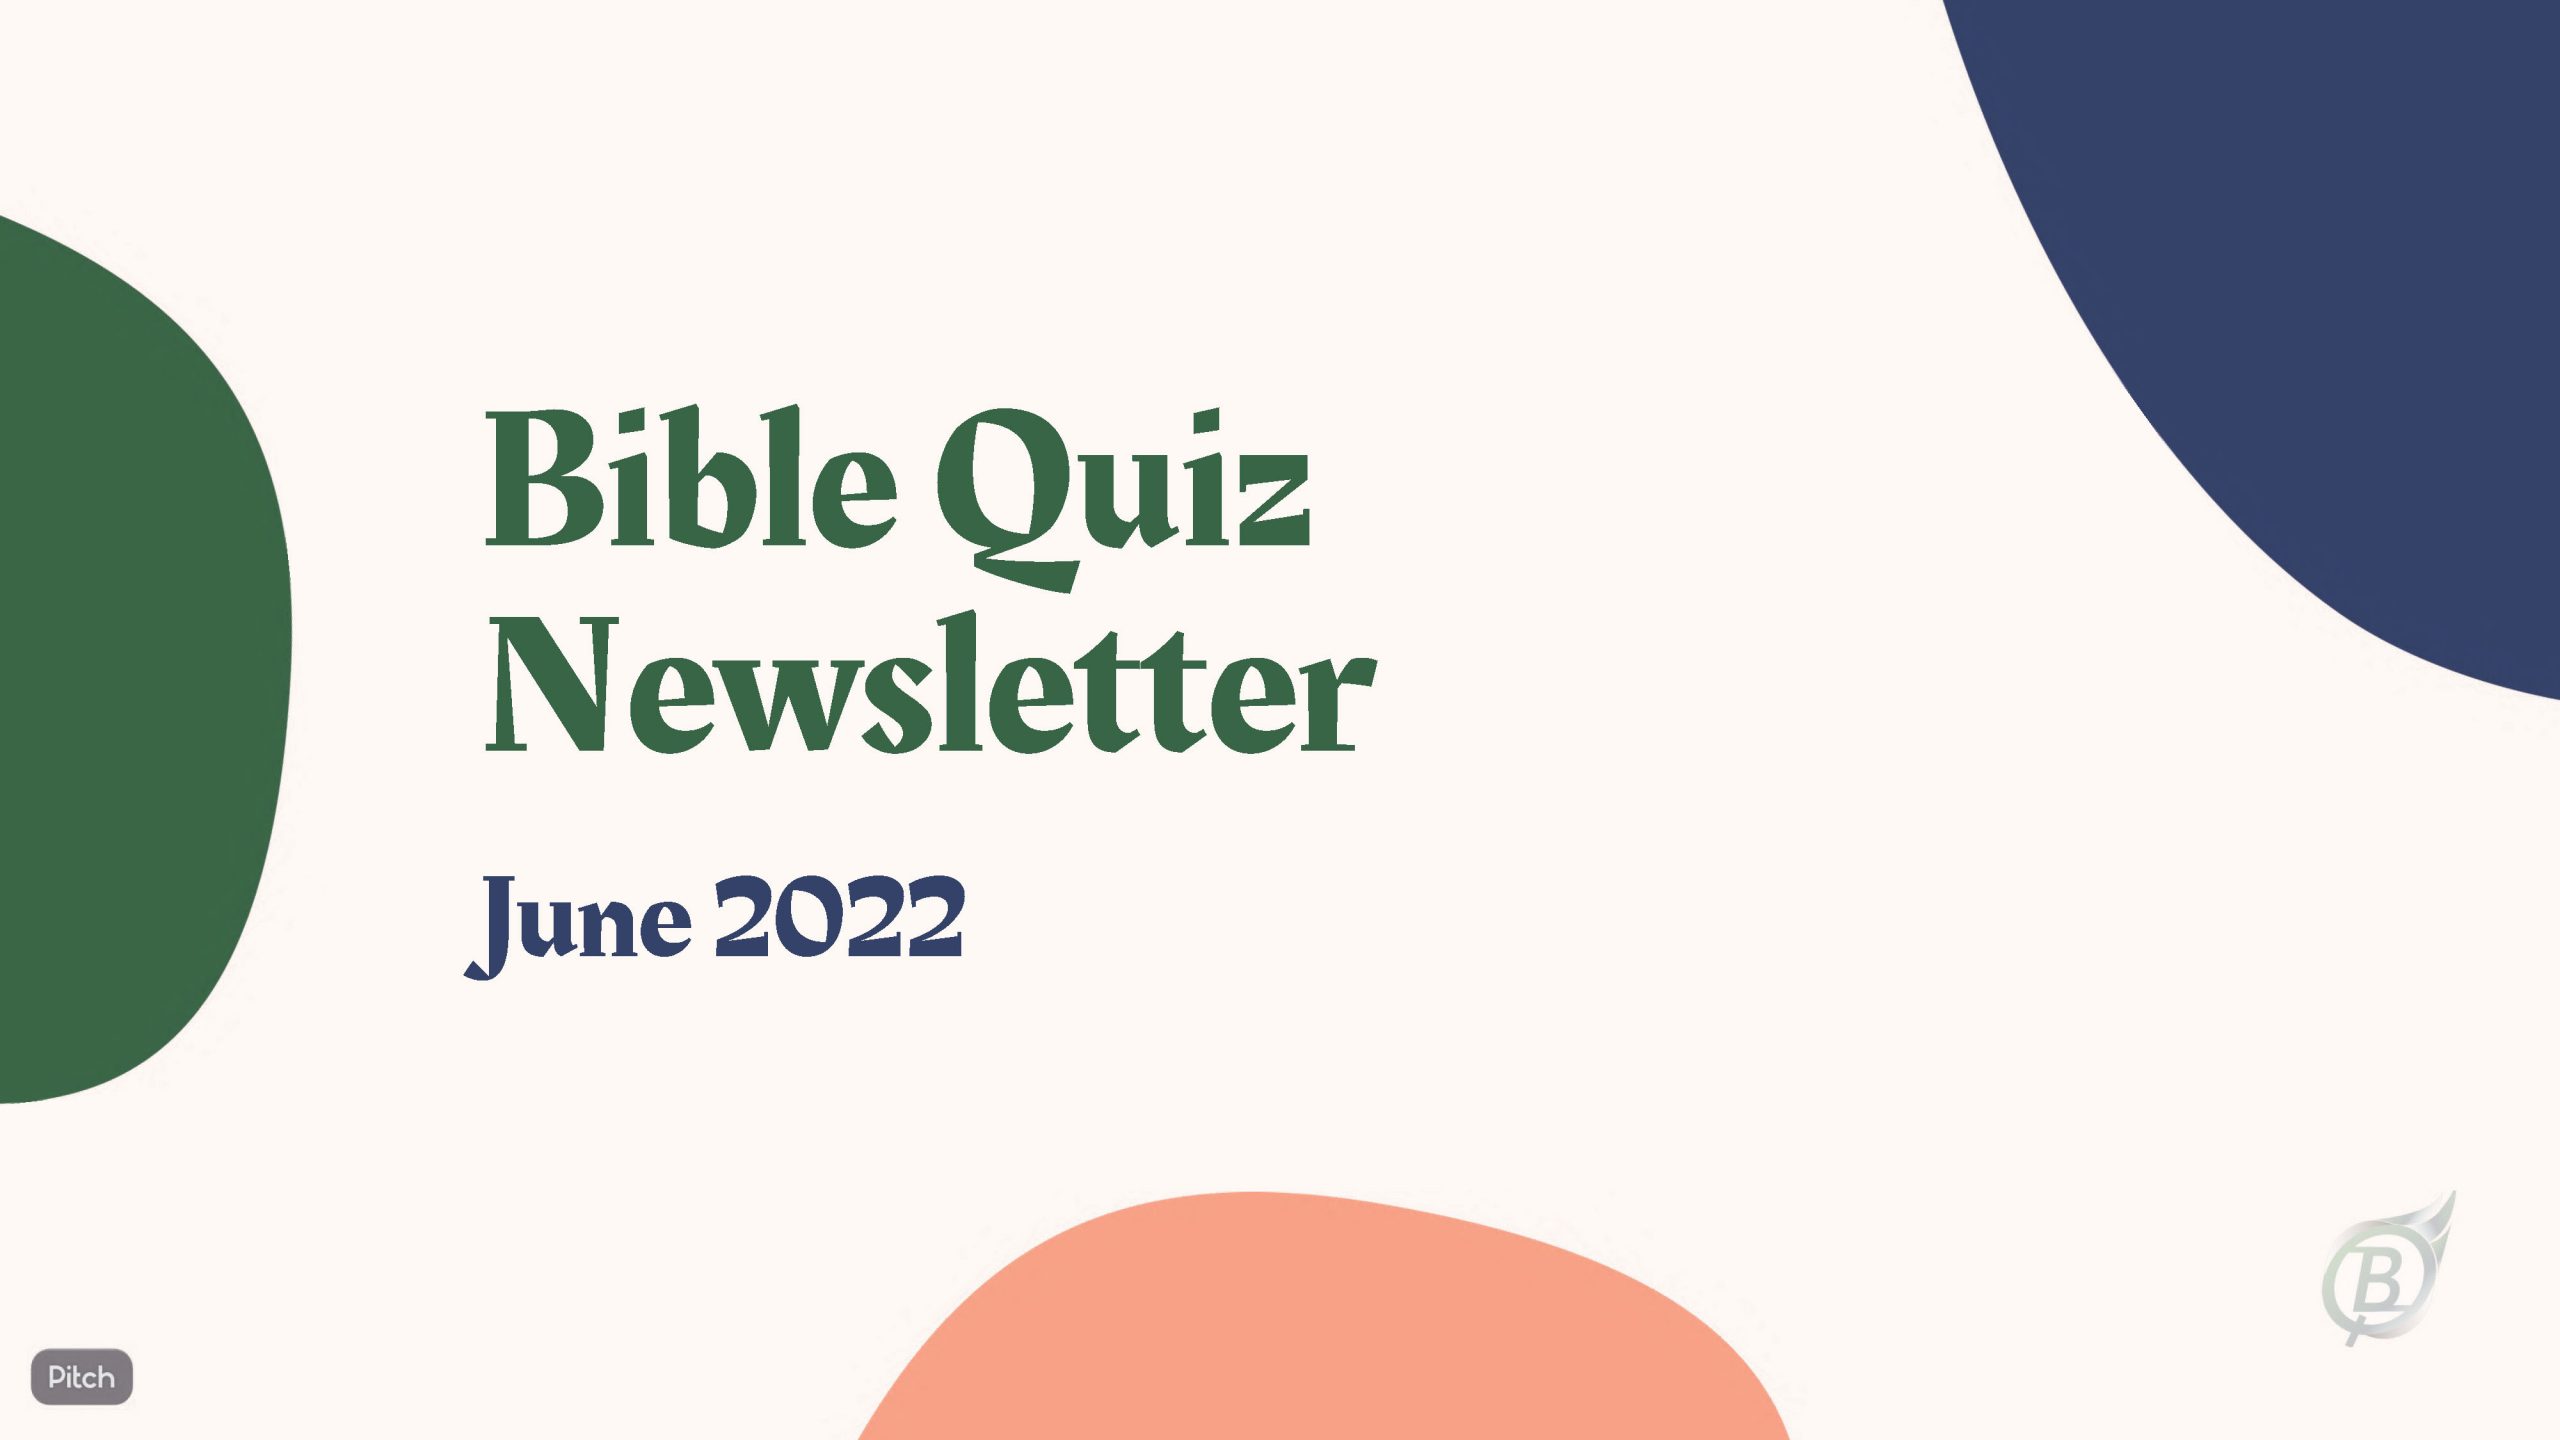 Bible Quiz Newsletter - June 2022